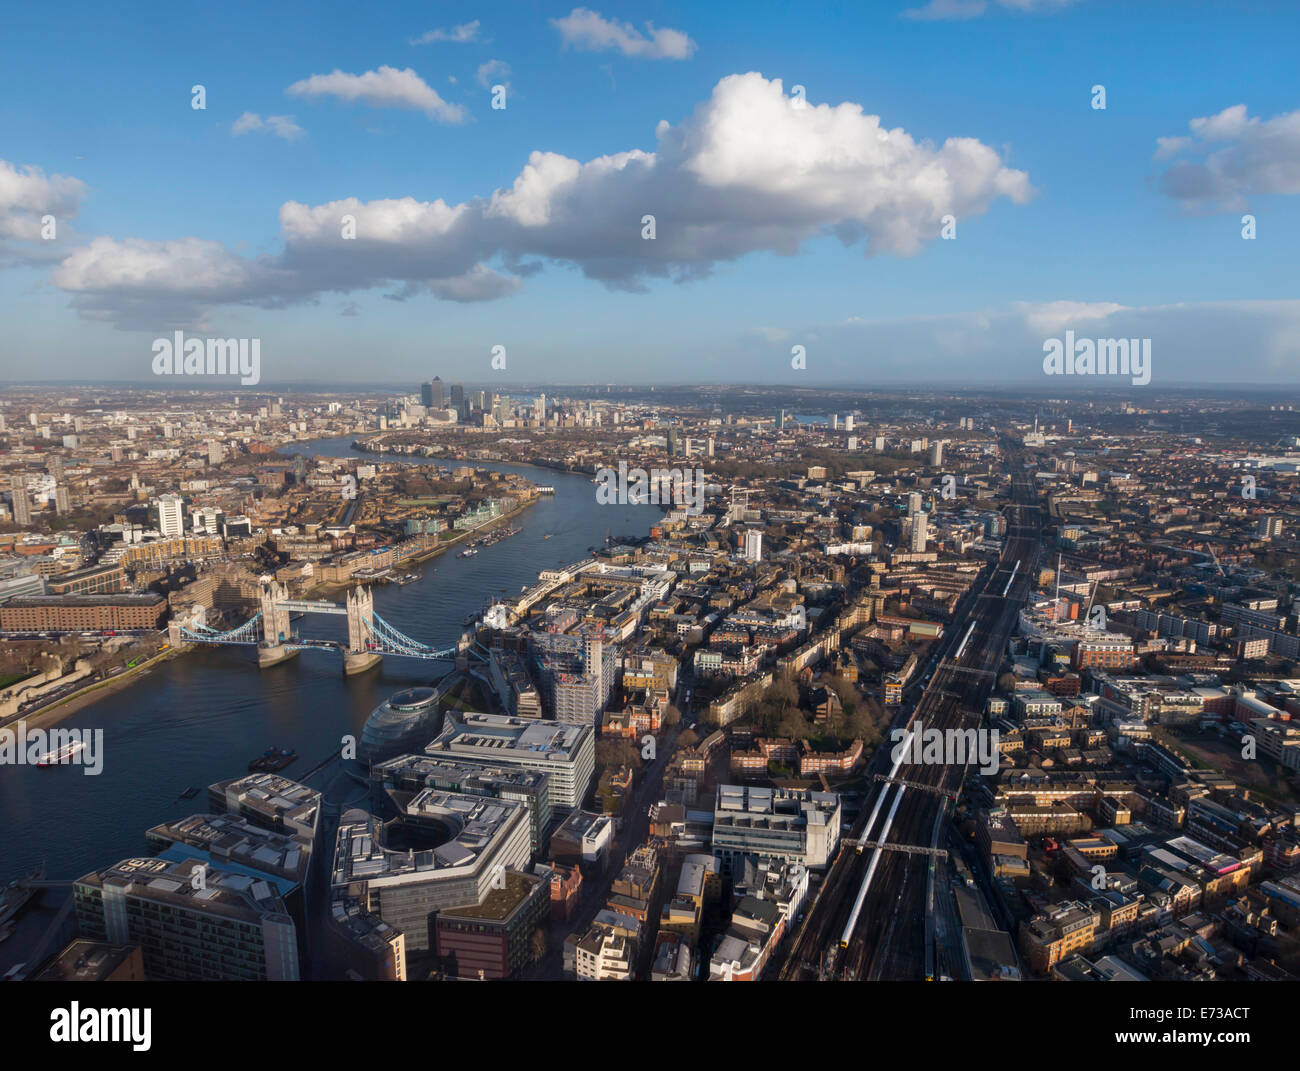 Paisaje aéreo mostrando el río Támesis, el Puente de la torre y las vías del ferrocarril, Londres, Inglaterra, Reino Unido, Europa Foto de stock